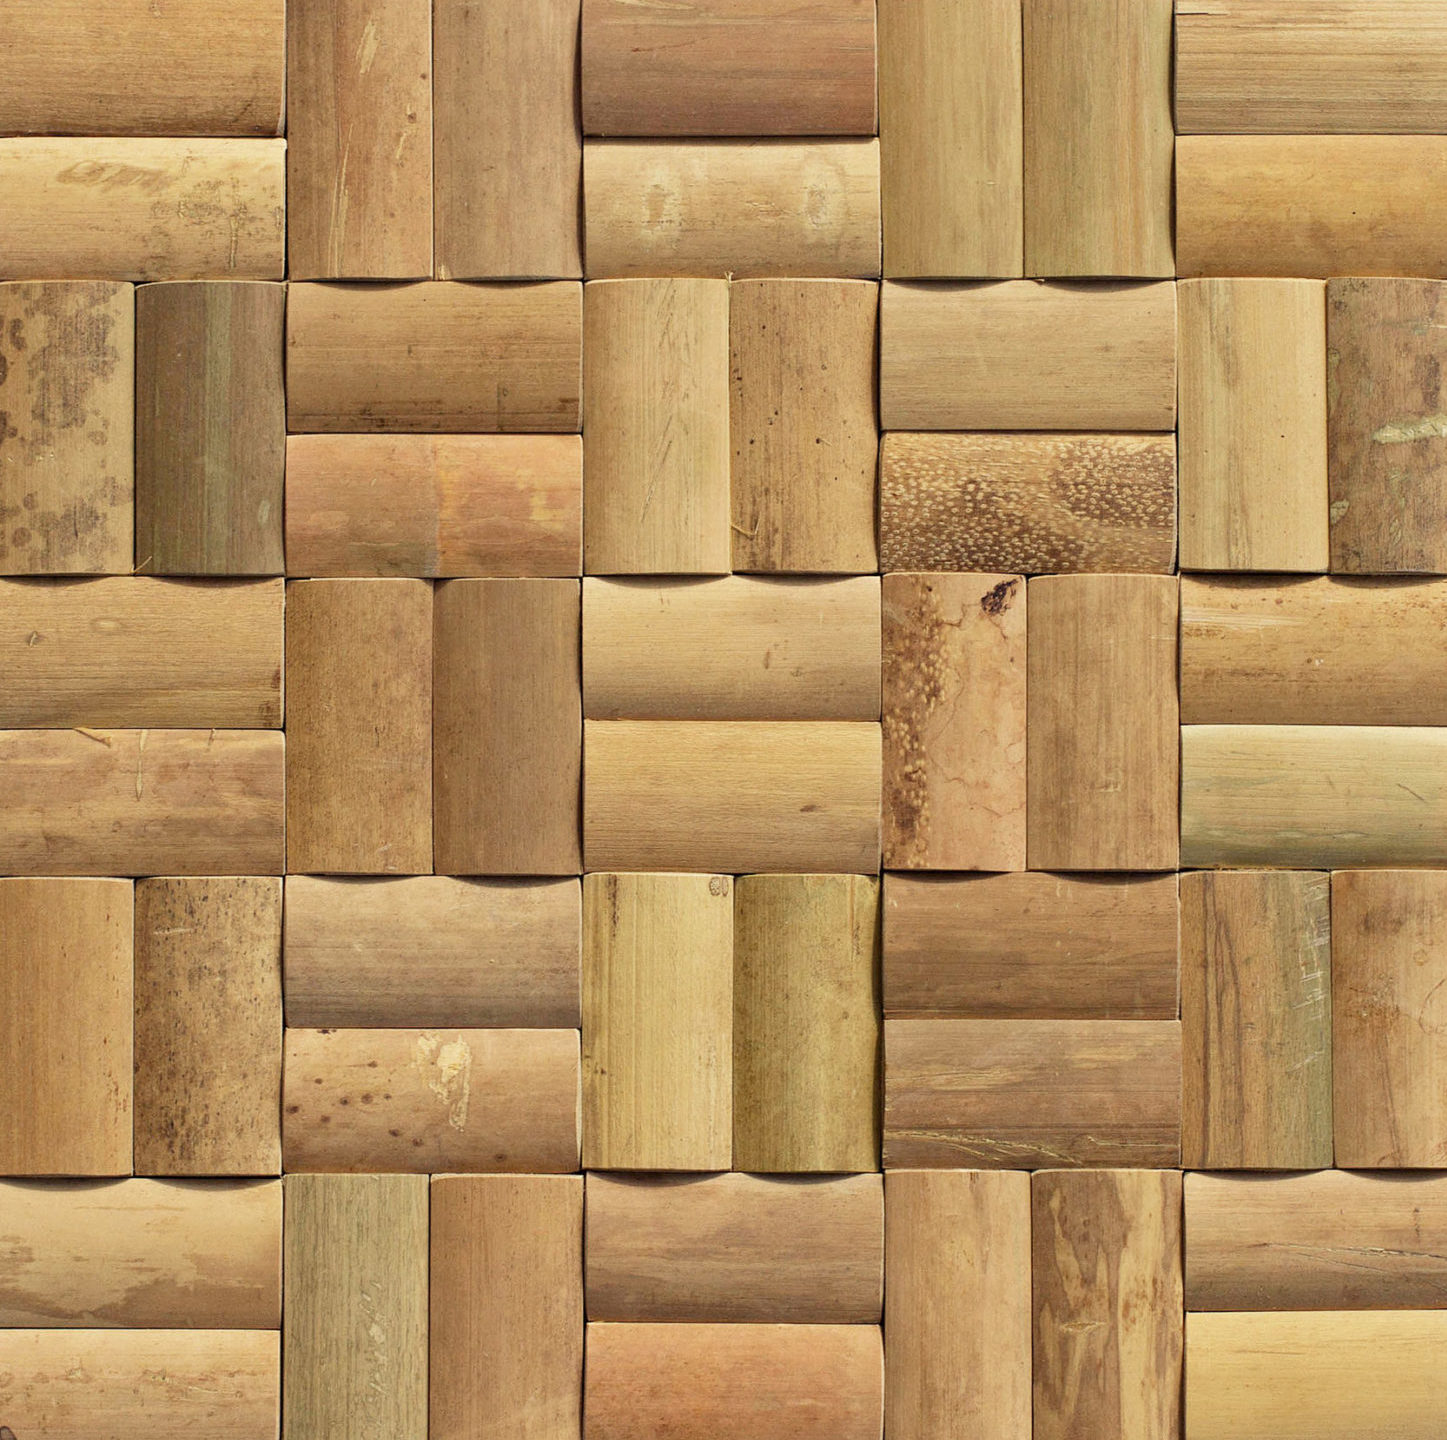 Bamboo Tiles - Bamboo Mosaic Tile Bamboo Wall Tile Bamboo Tiles Global